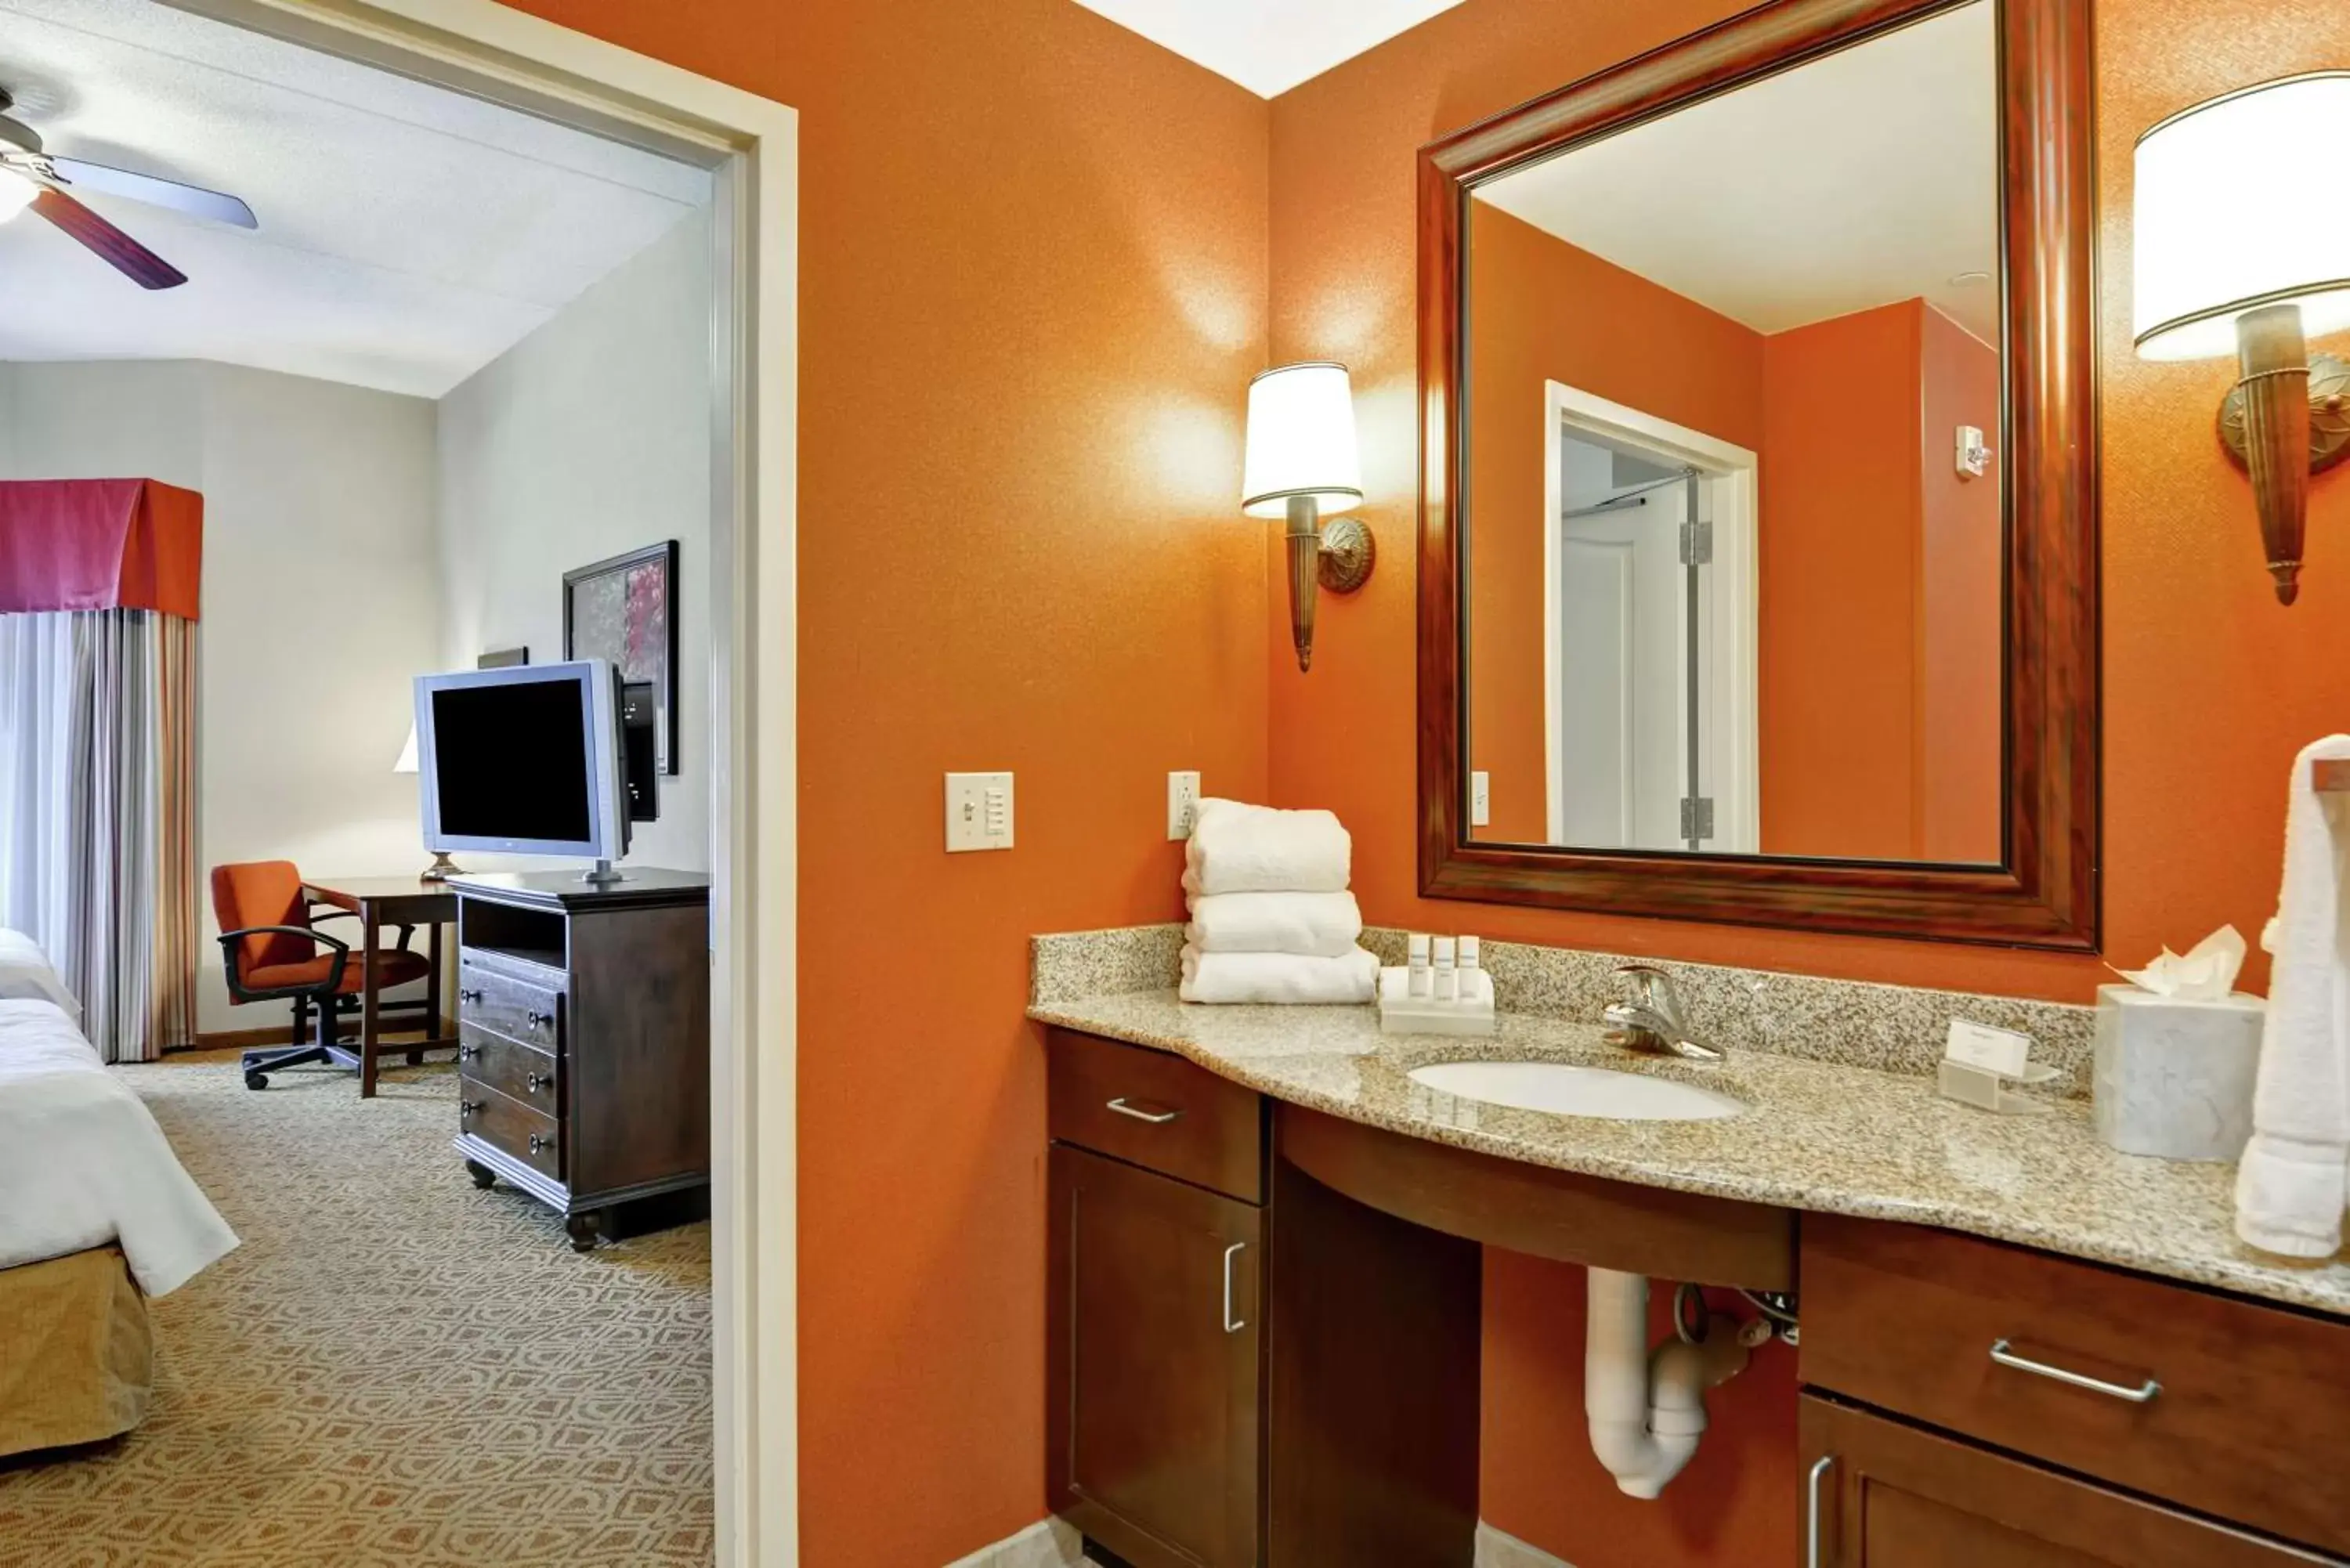 Bedroom, Bathroom in Homewood Suites Fredericksburg